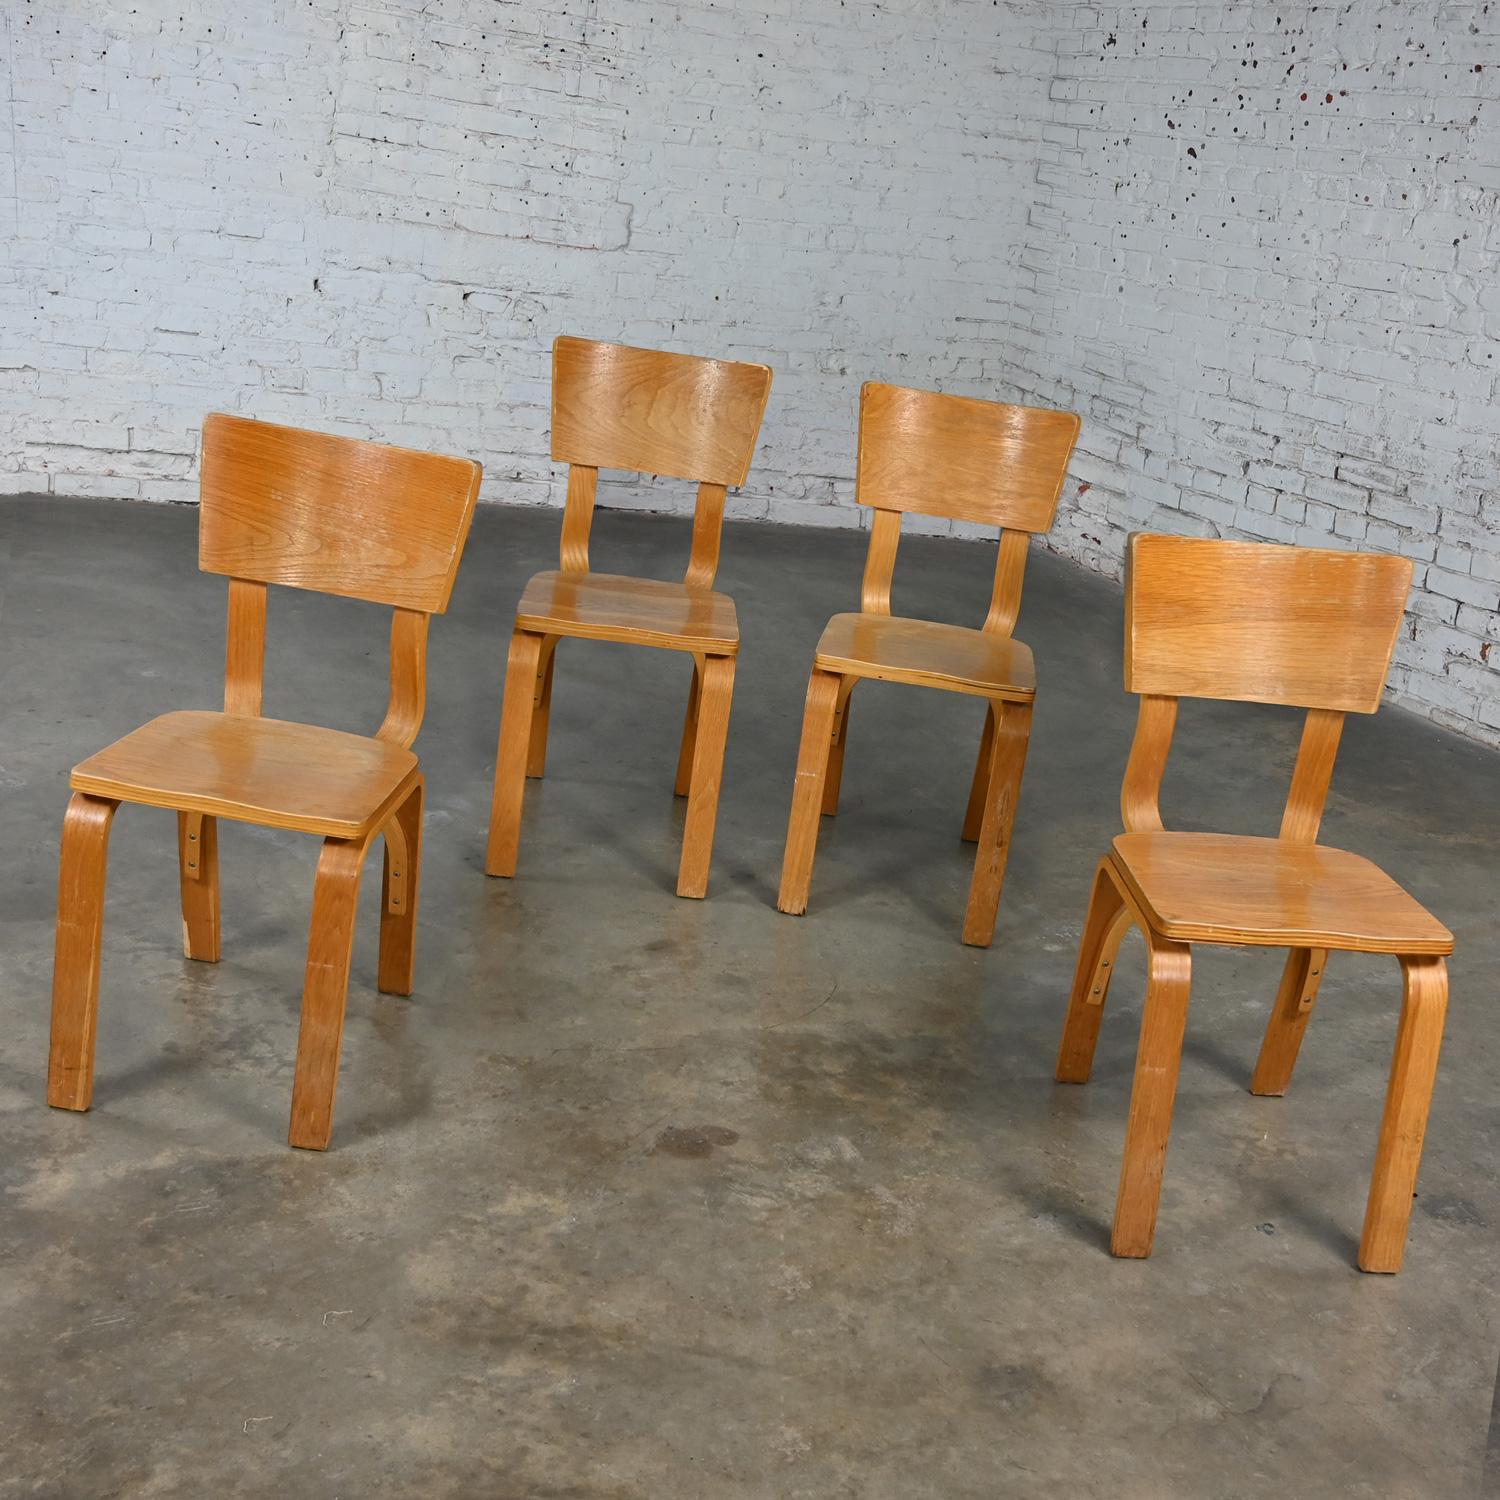 Merveilleuses chaises de salle à manger Thonet #1216-S17-B1 en contreplaqué de chêne courbé avec des sièges en forme de selle et un seul dossier en arc, ensemble de 4, en l'état. Voir la note ci-dessous concernant les options de remise en état.